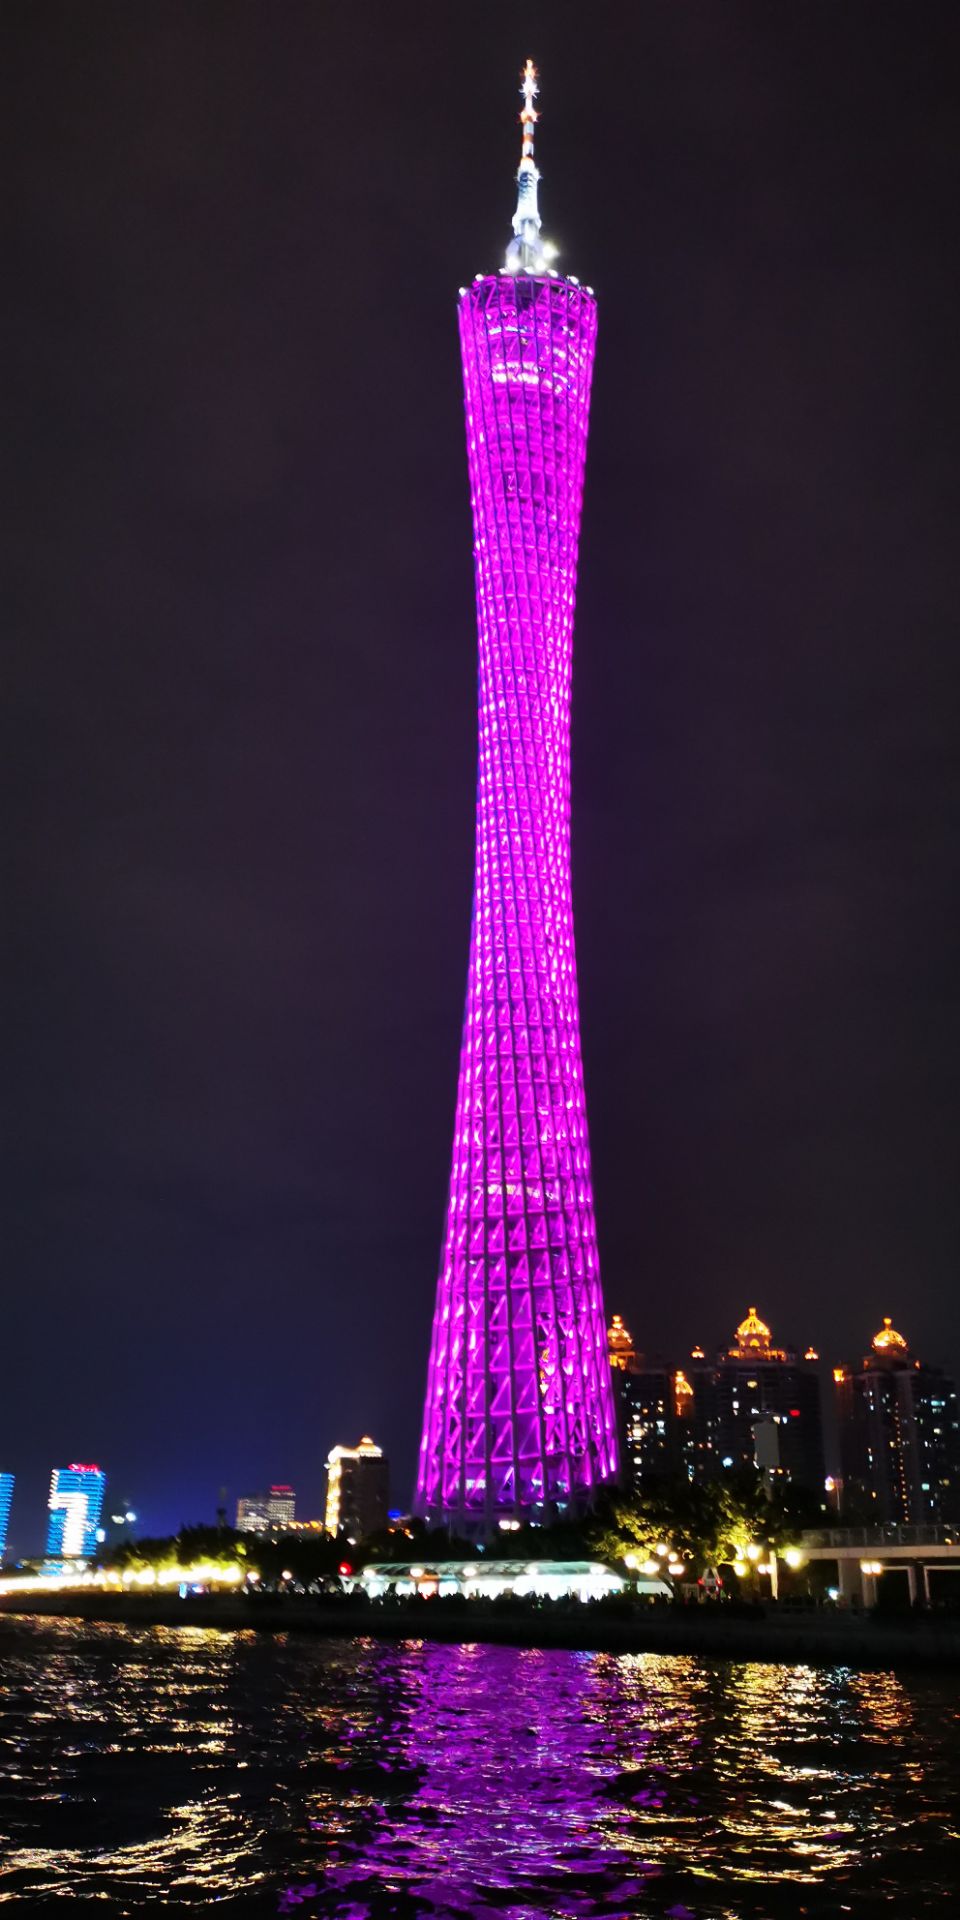 值得一去,夜晚的广州塔更加漂亮! 2020